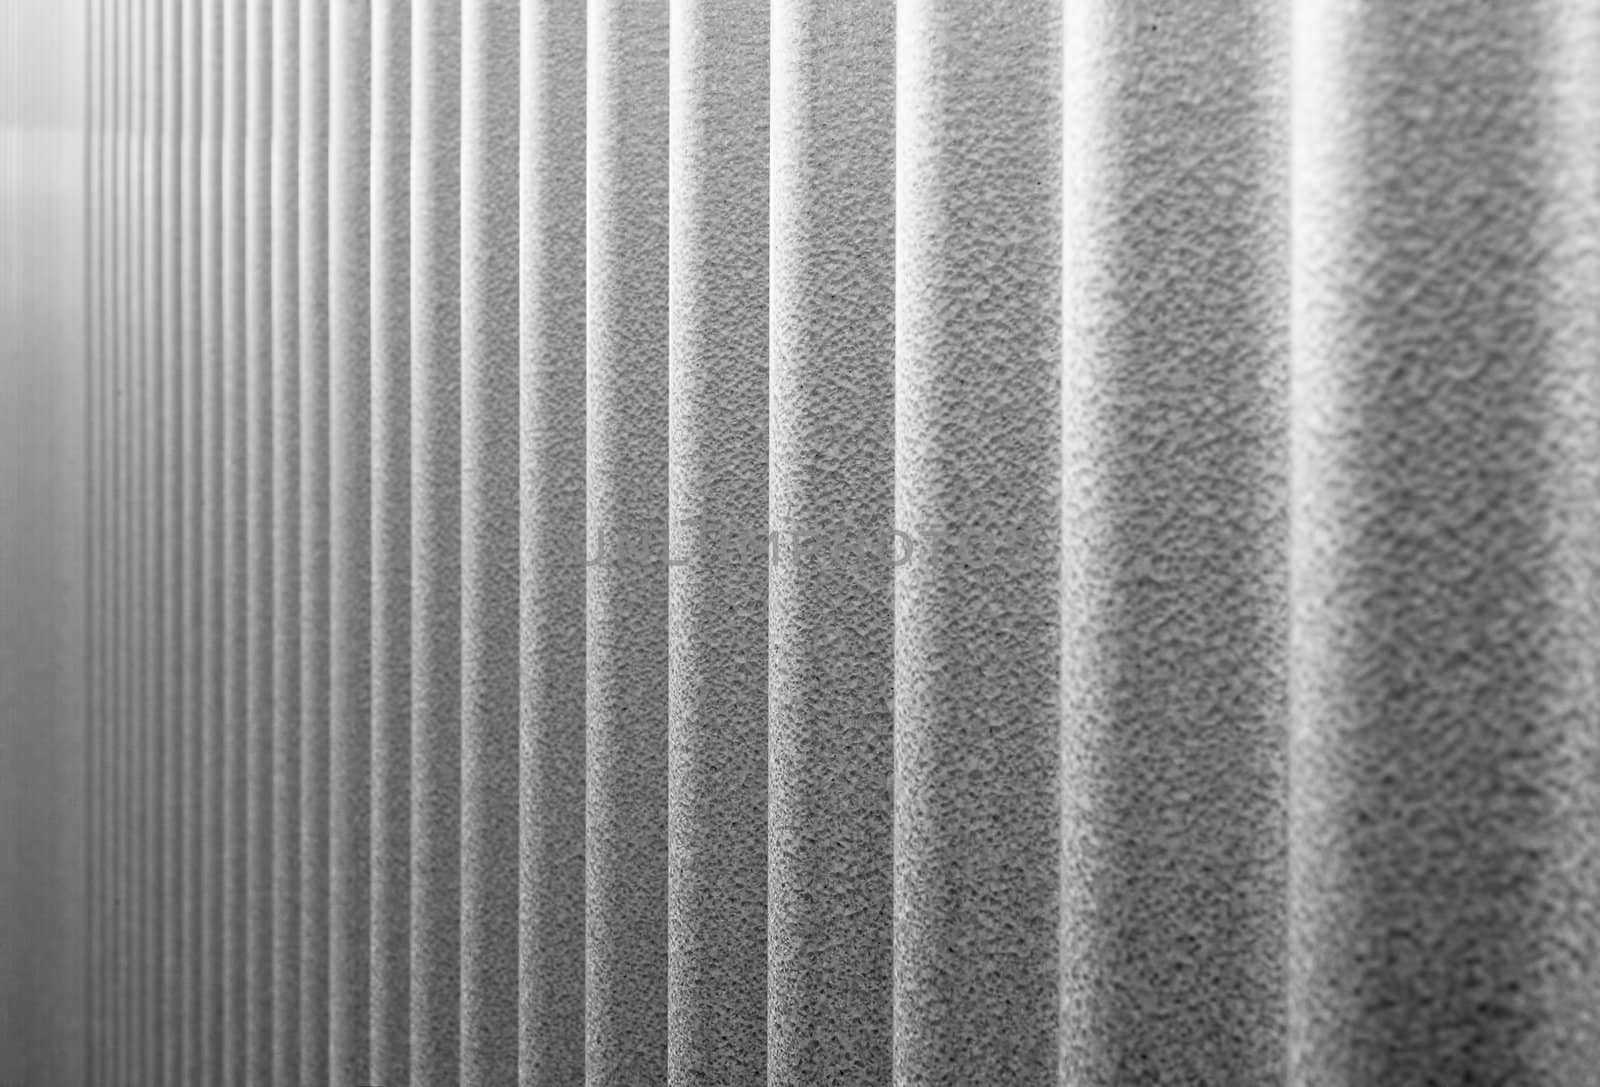 Corrugated Infinity BW by bobkeenan